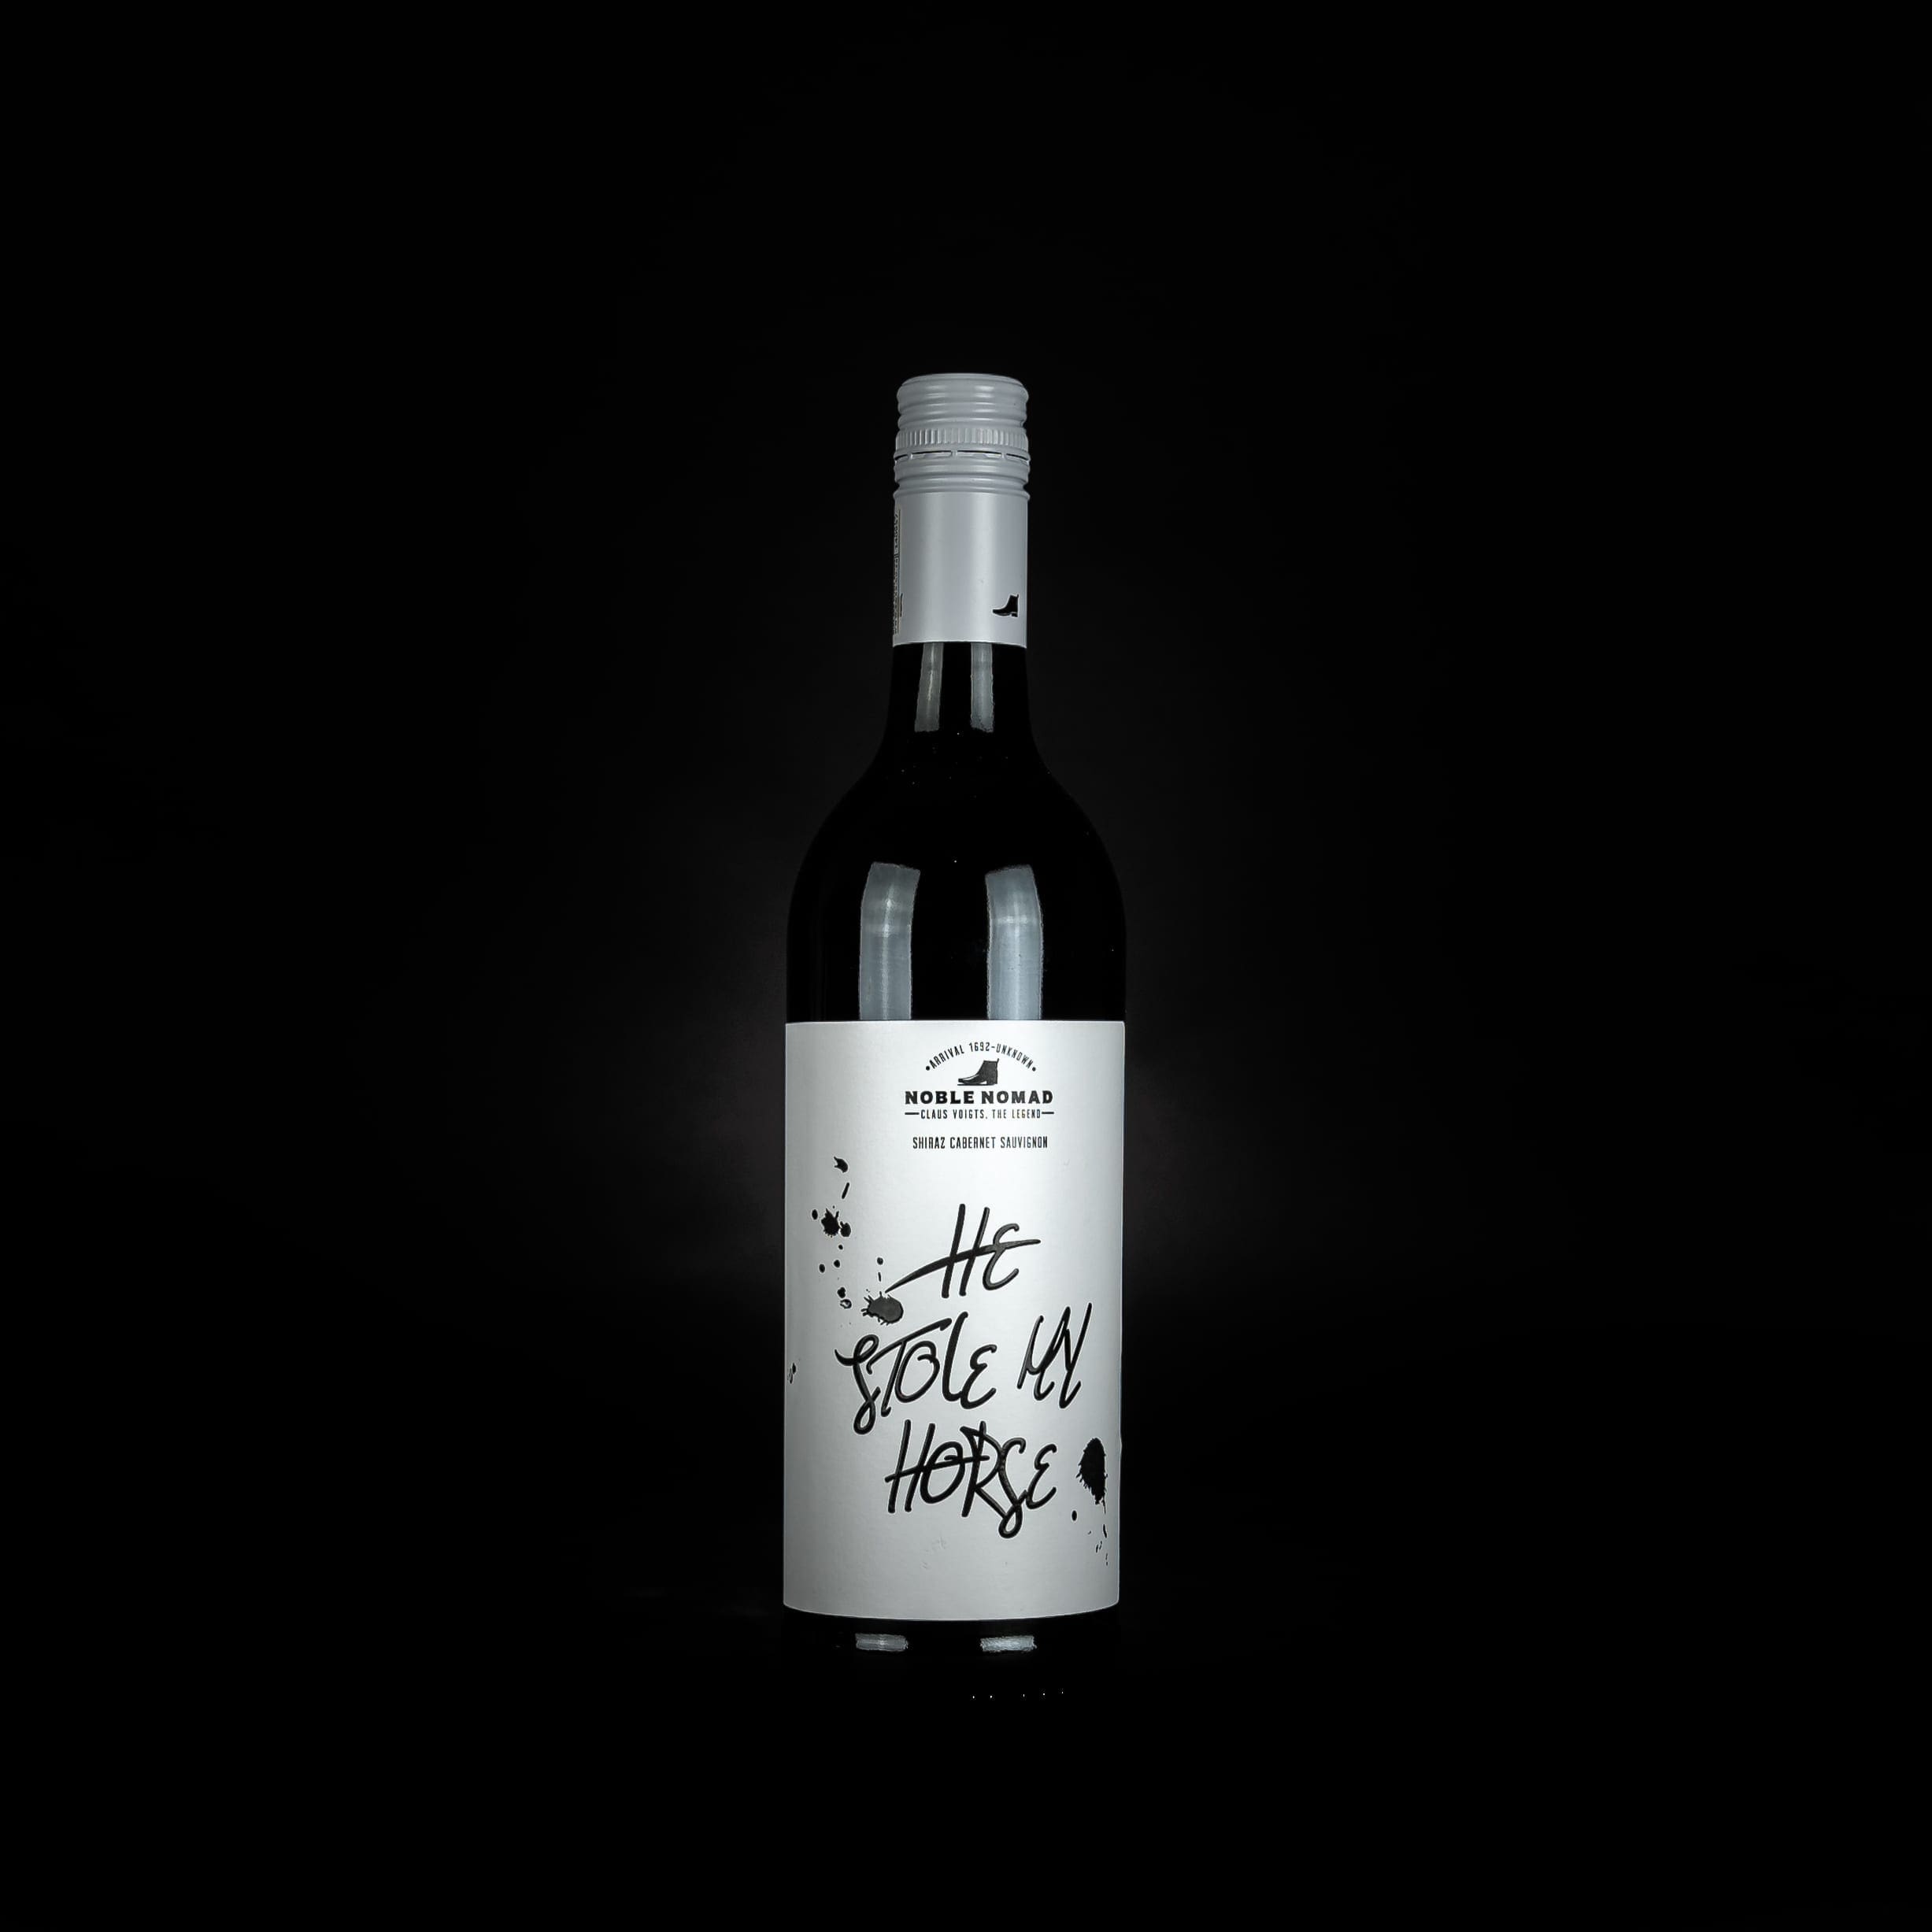 Südafrikanische Weine und Olivenöl - Weine aus Südafrika von Rosendal